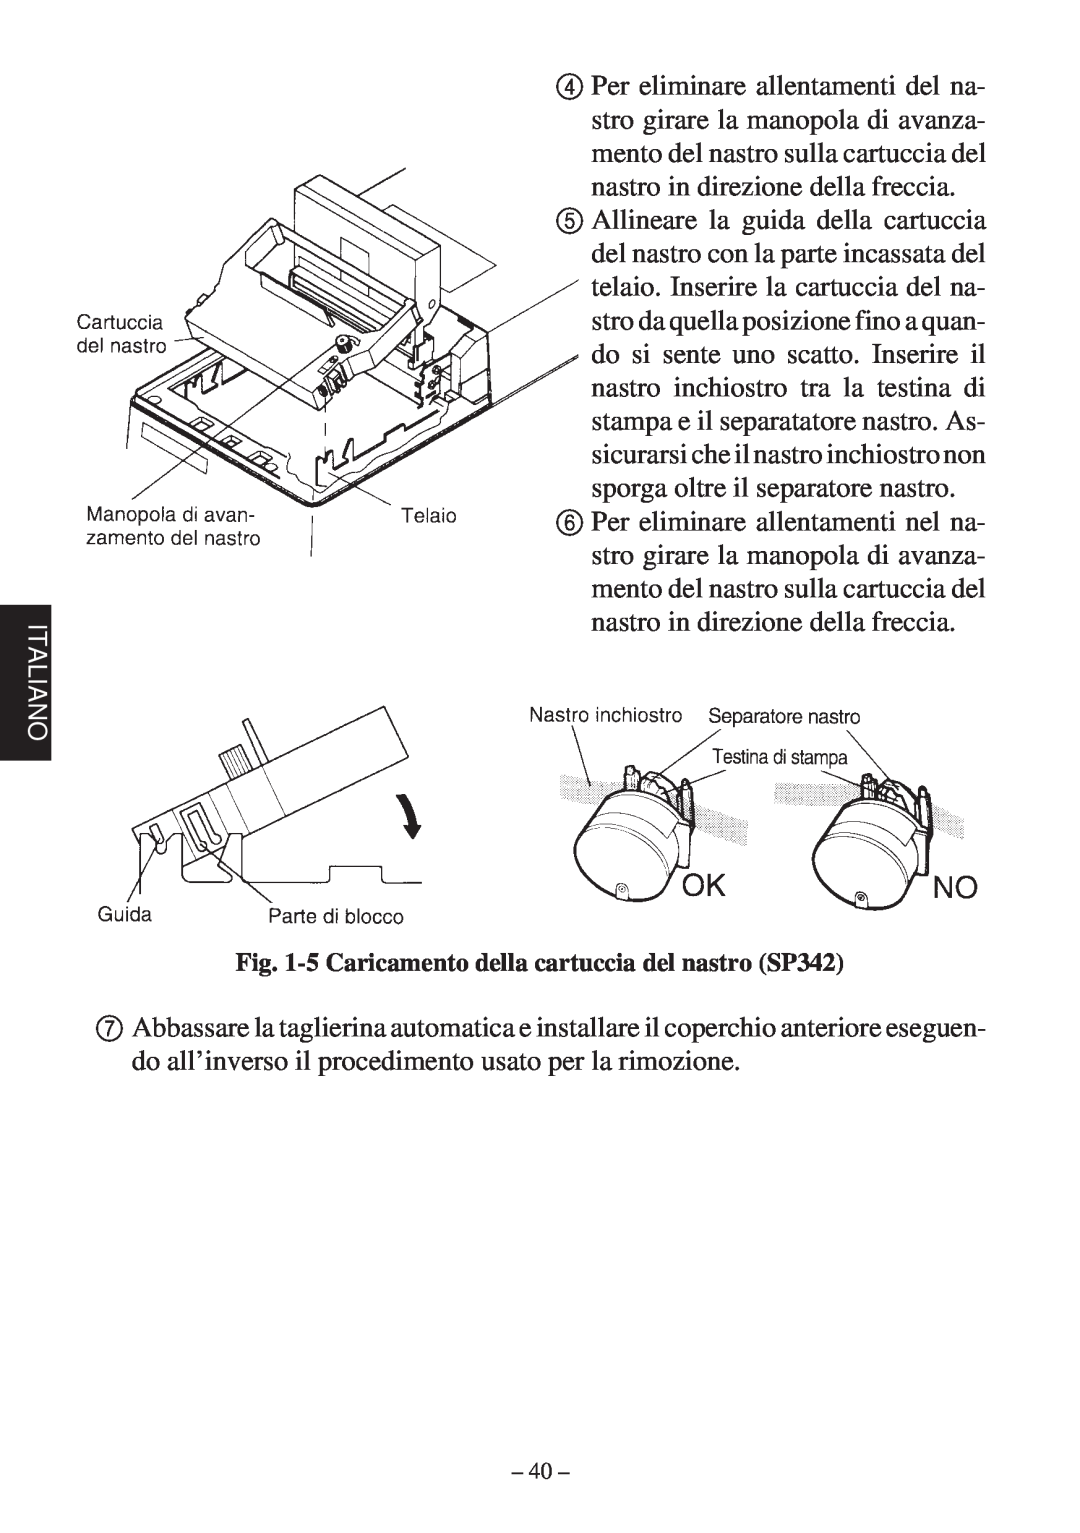 Star Micronics SP312F, SP342F-A manual 5 Caricamento della cartuccia del nastro SP342 